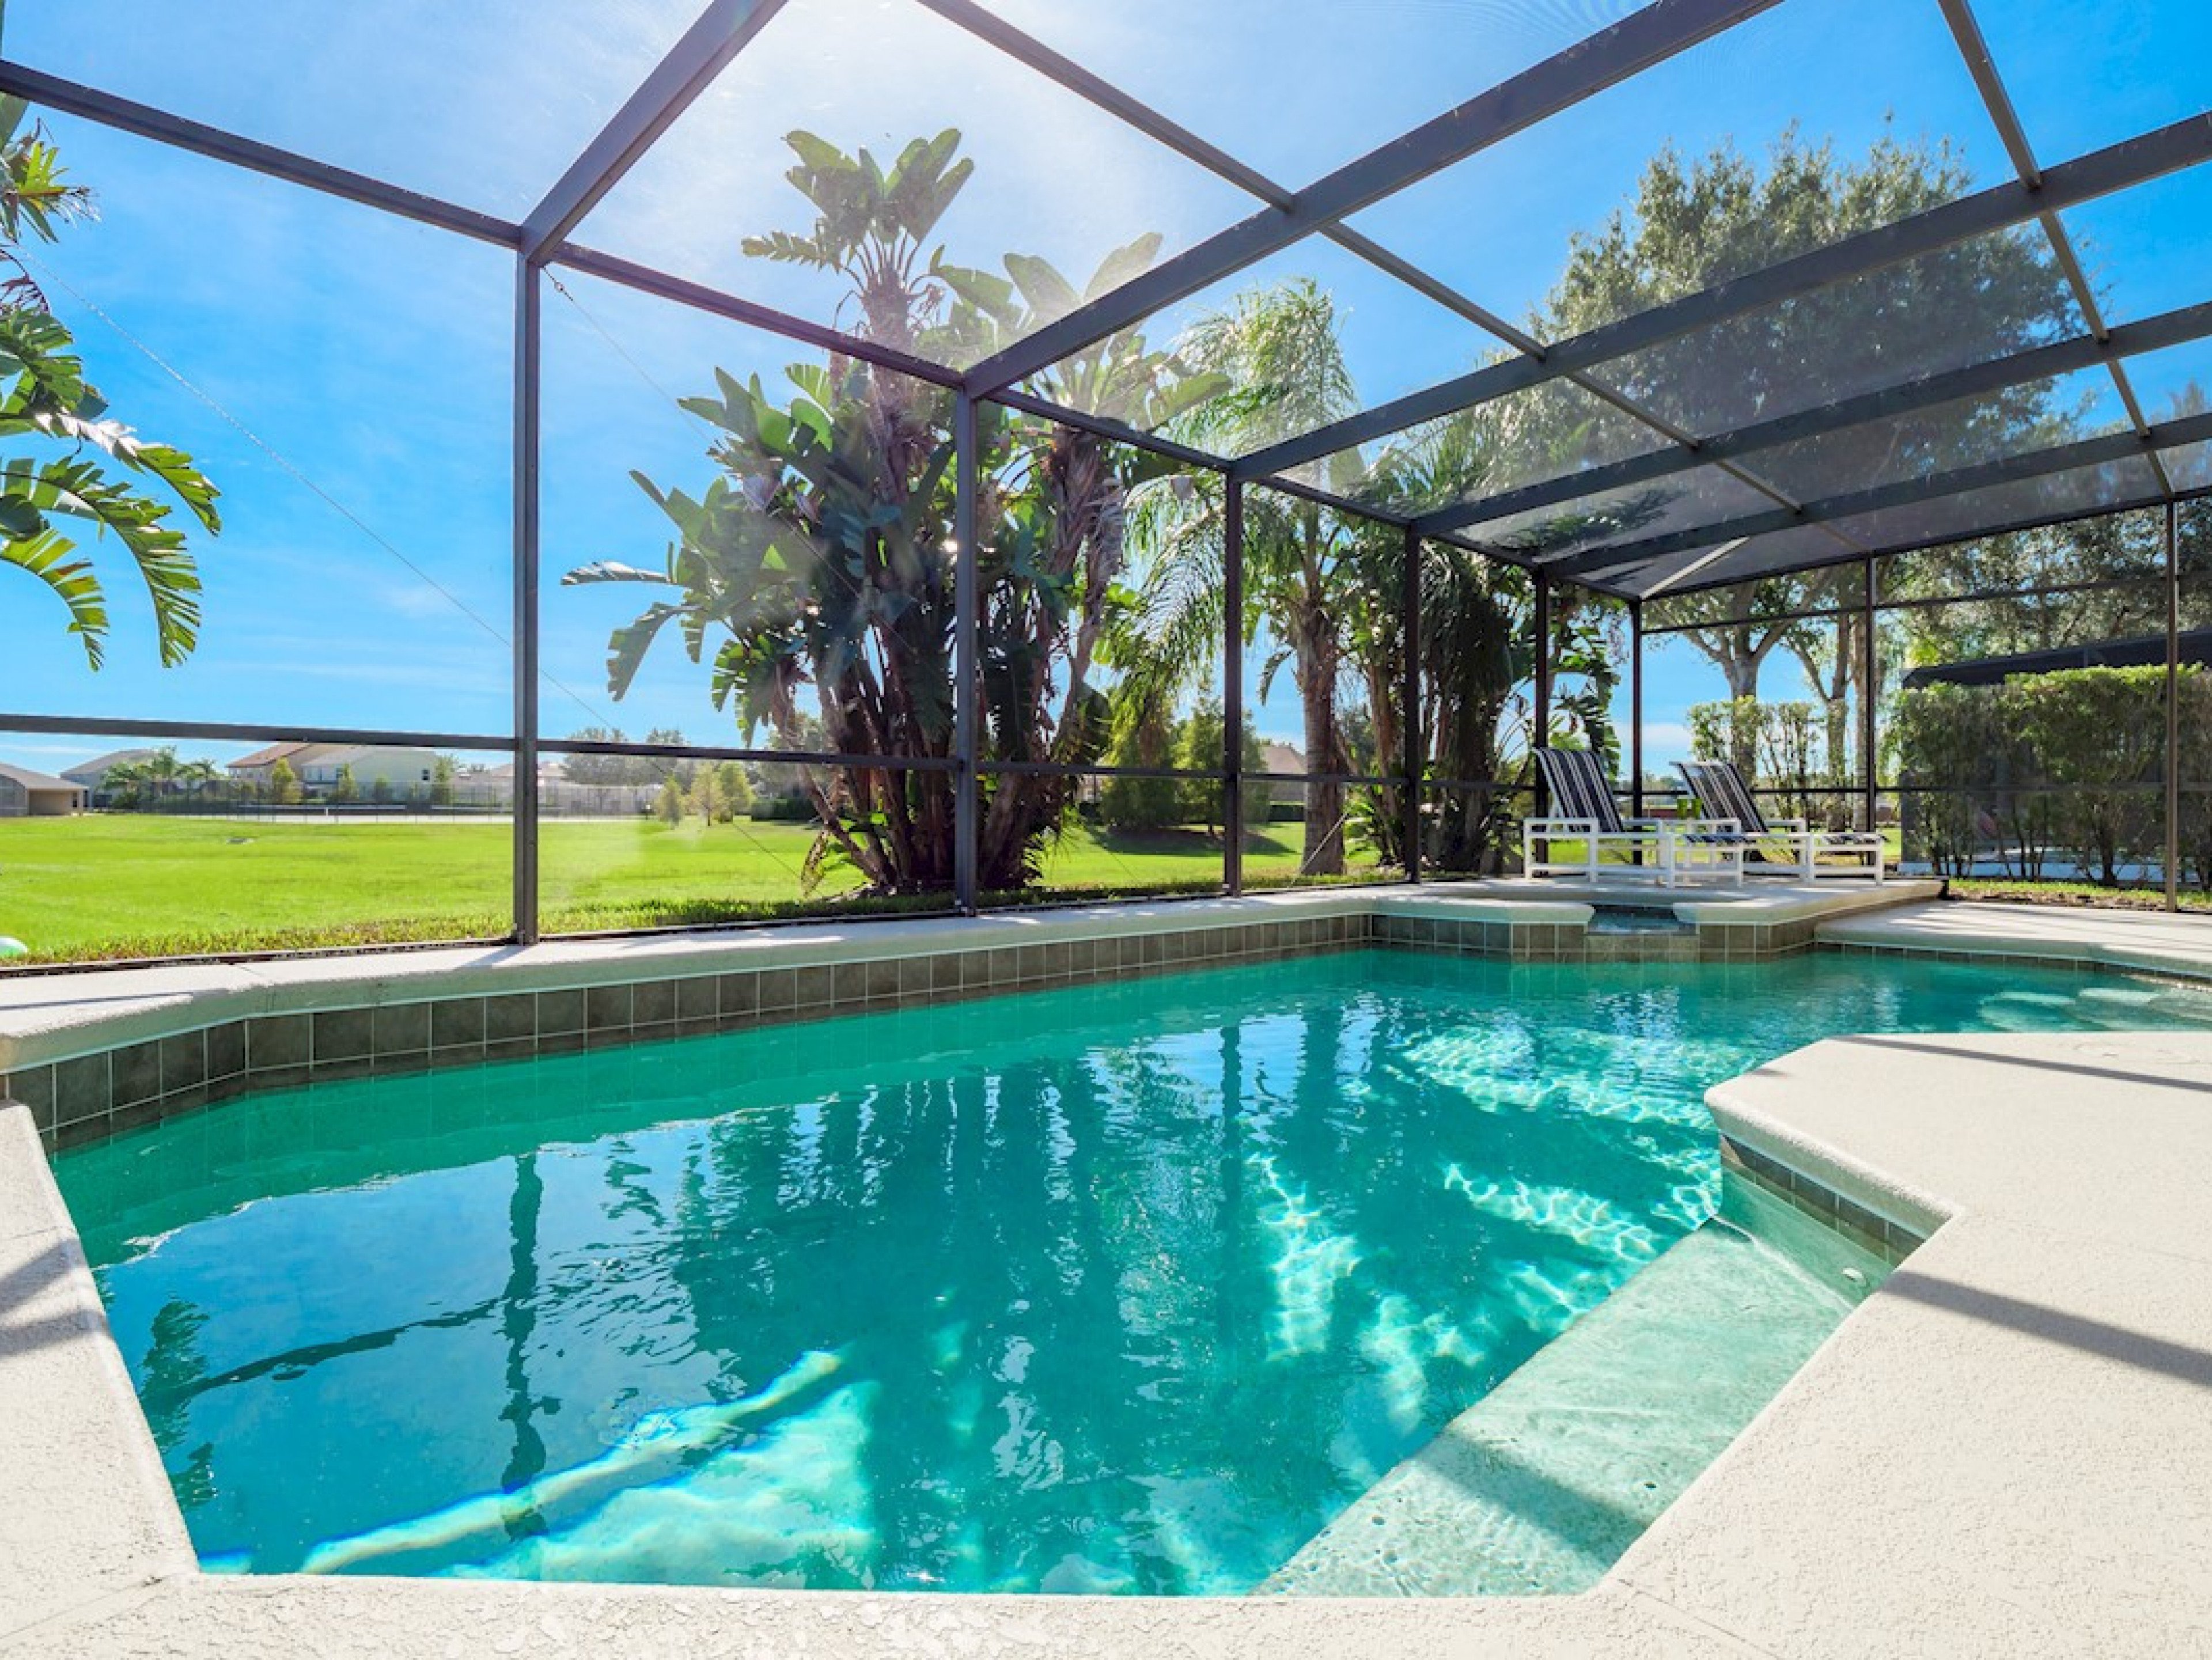 5 bedroom vacation rentals in Orlando Florida Westhaven Resort 8 